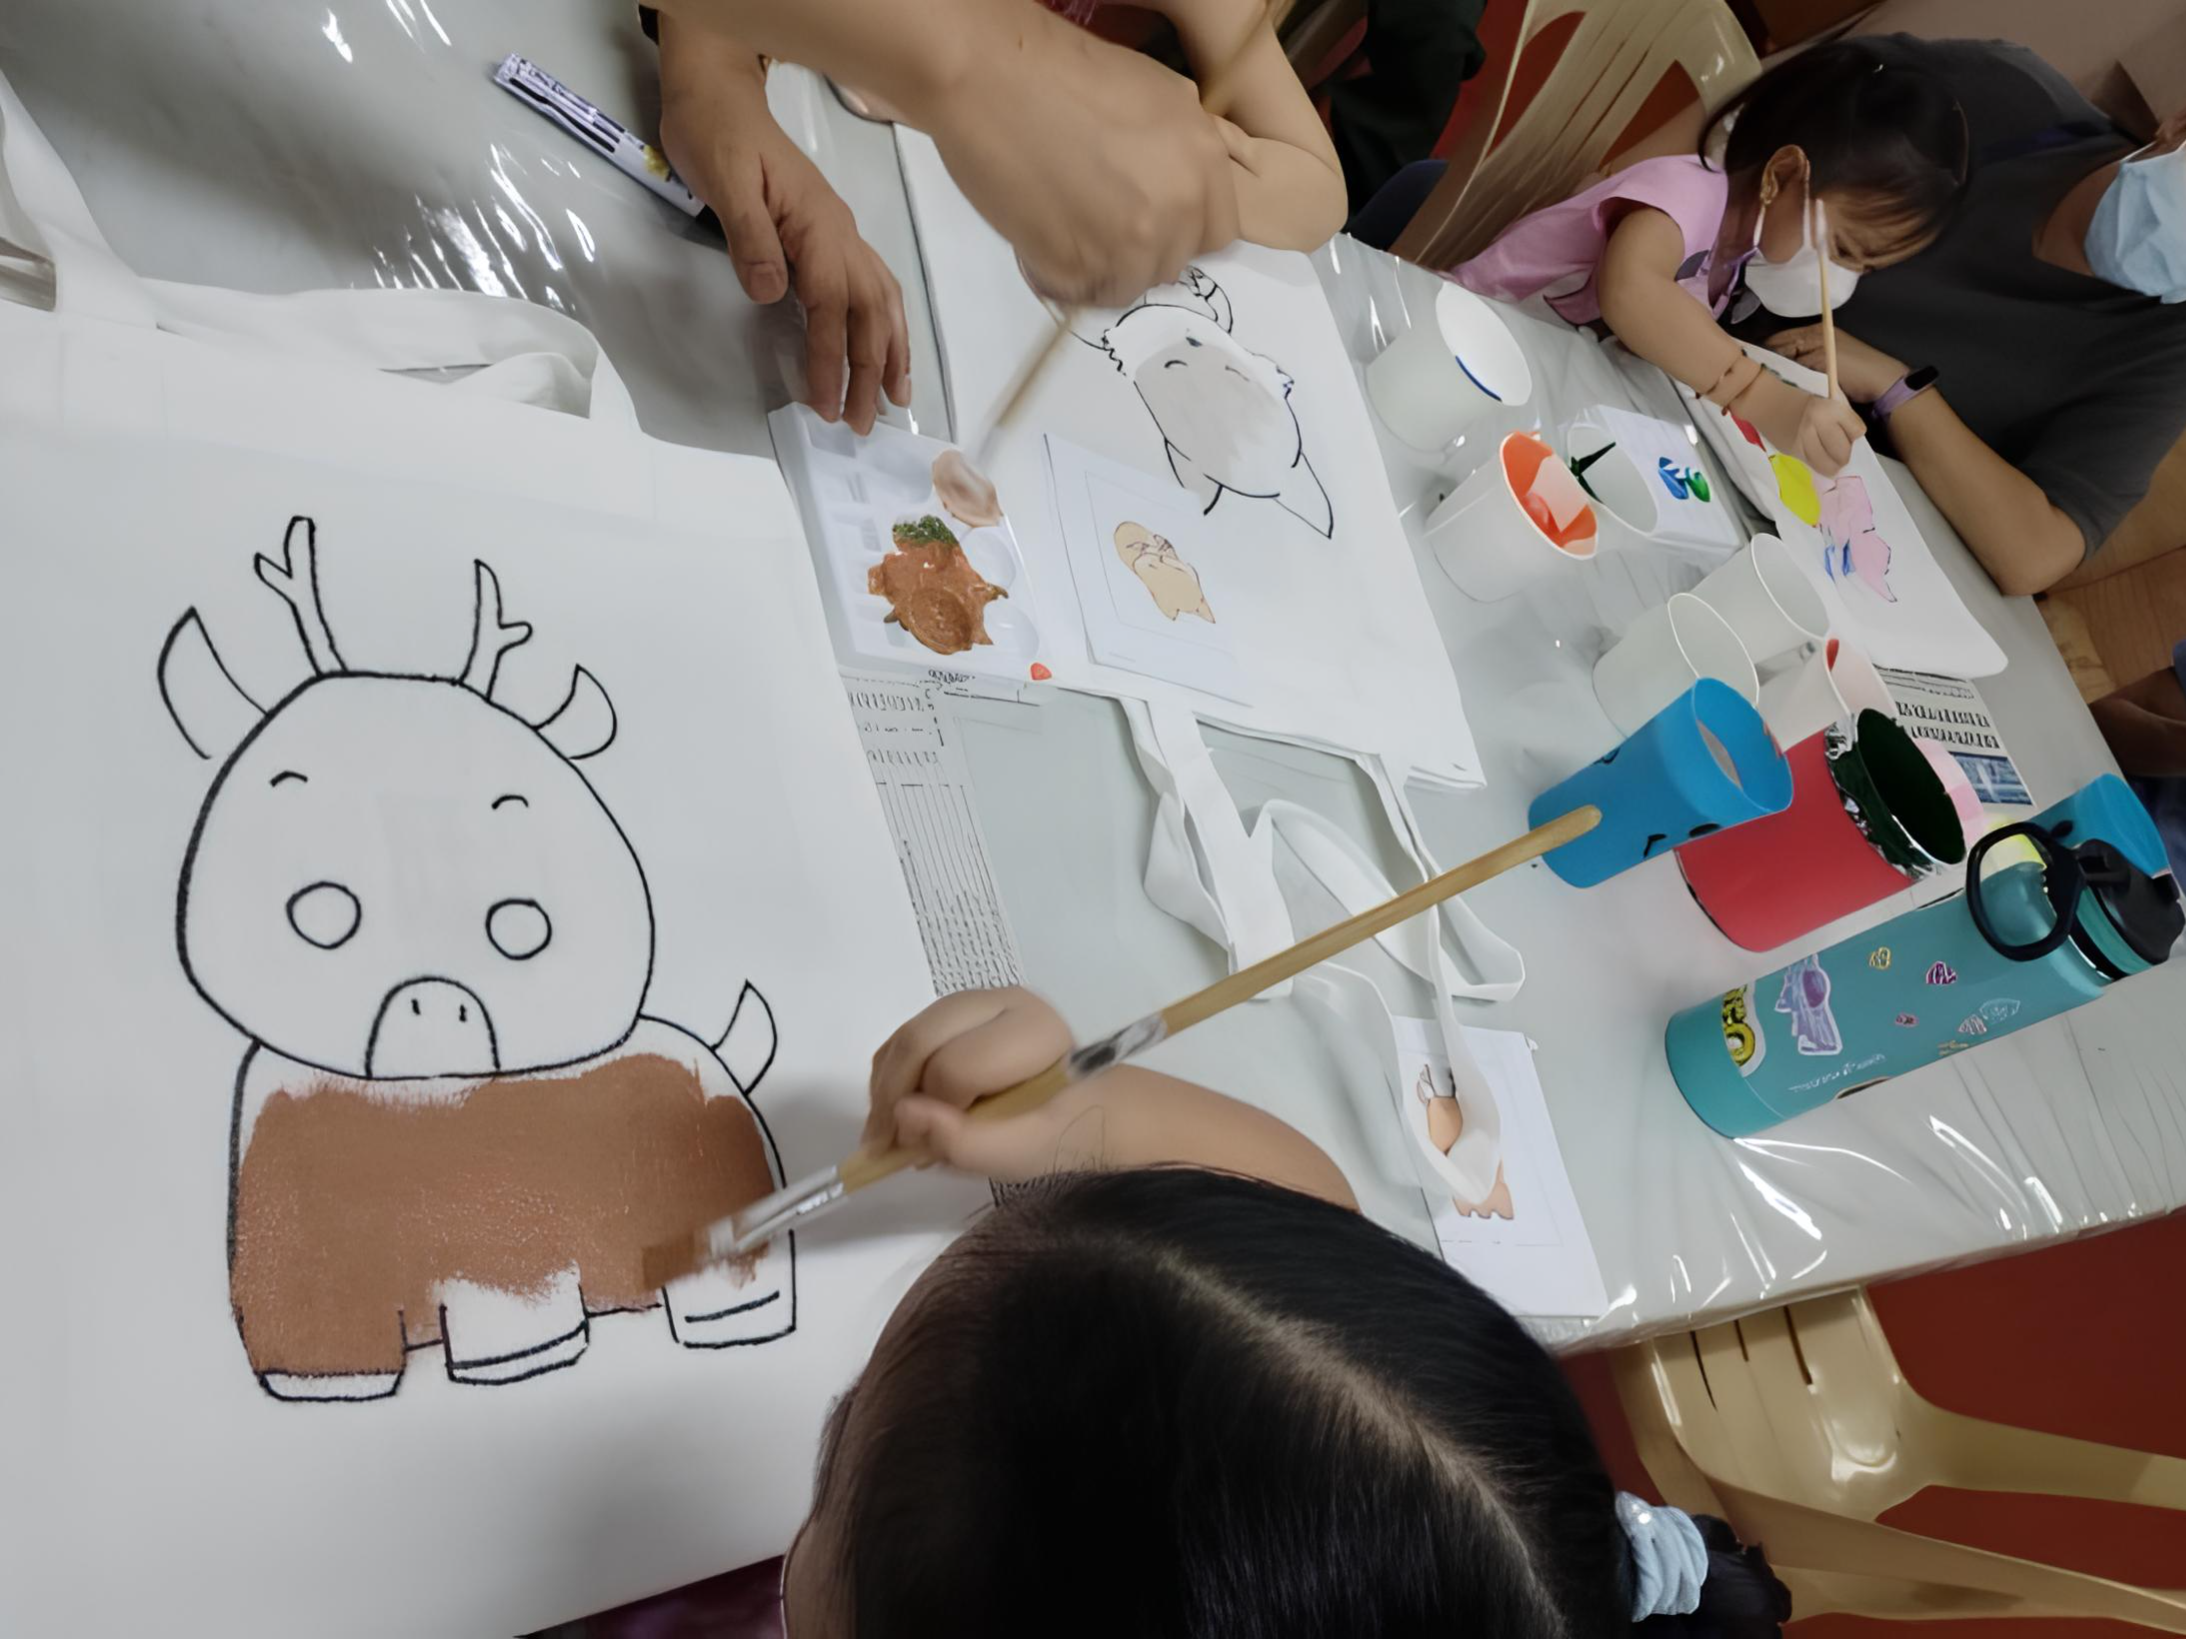 計順市基督學院舉行海外民俗在地研習 包包彩繪藝術認識台灣文化圖片